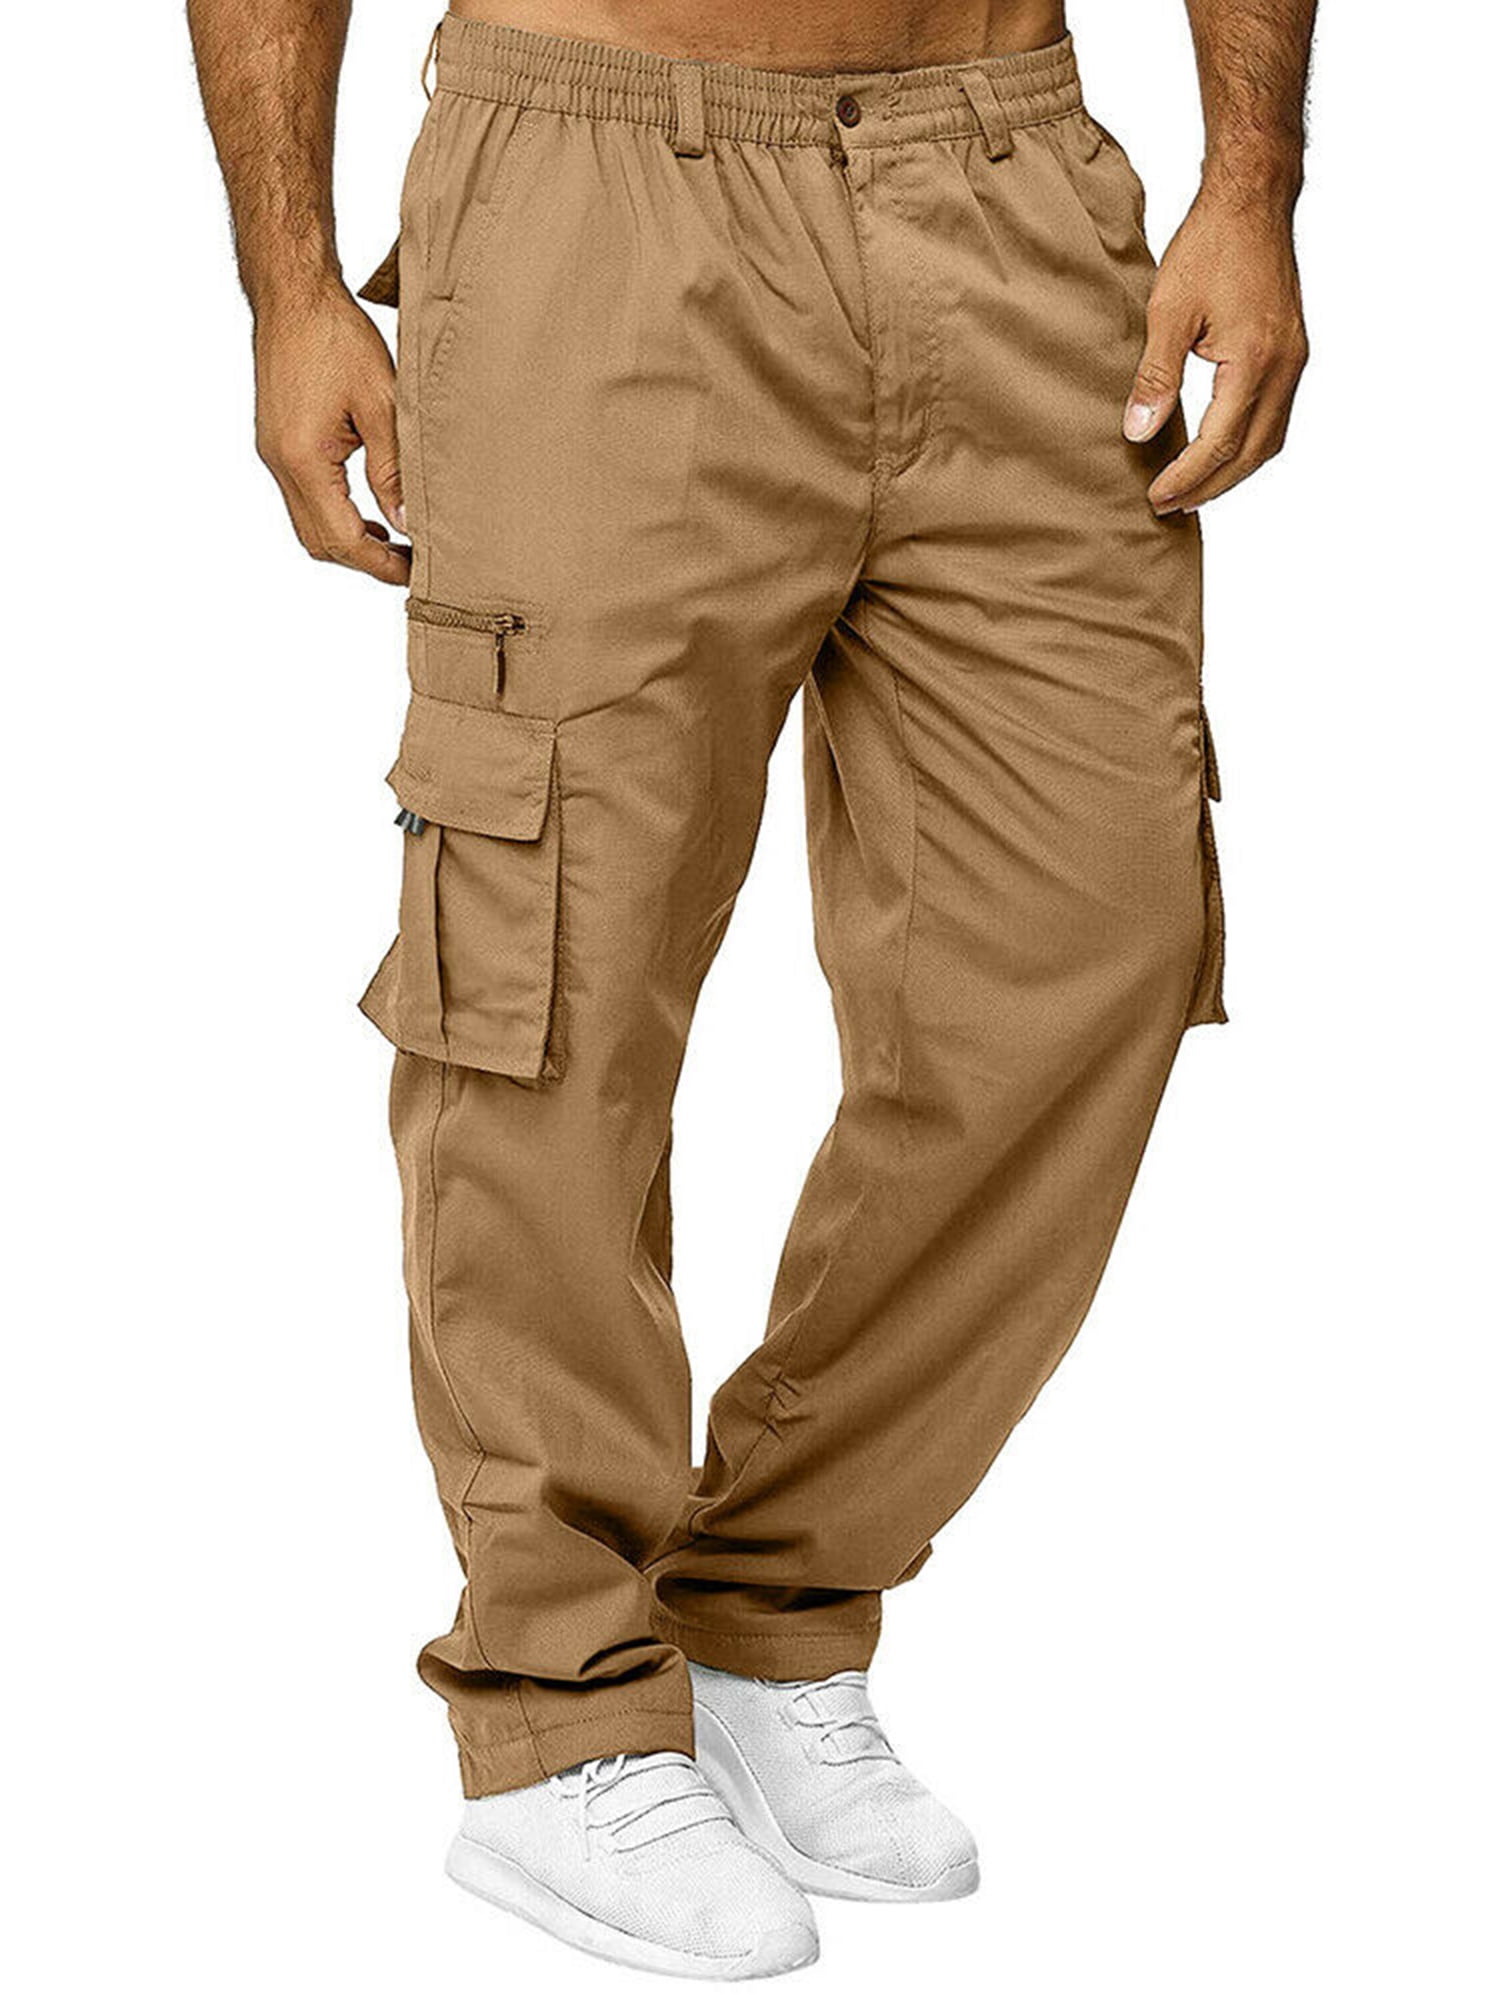 Mens Combat Cargo Work Trousers Heavy Duty Outdoor Work Wear pockets Pants 